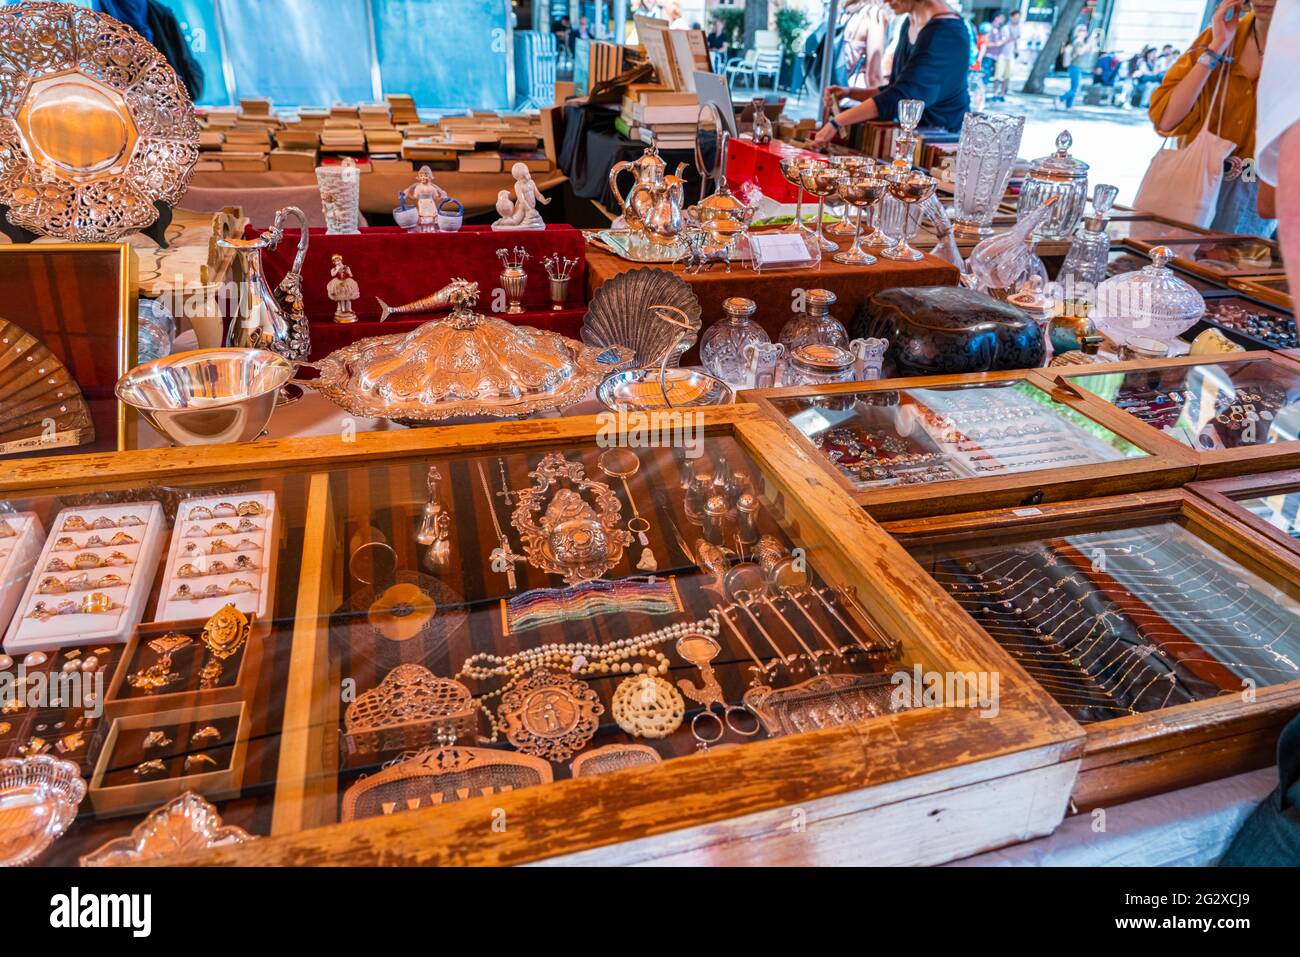 BARCELLONA, SPAGNA - 10 GIUGNO 2019: Oggetti antichi, monete, gioielli, stoviglie e altri utensili in un mercato delle pulci Foto Stock